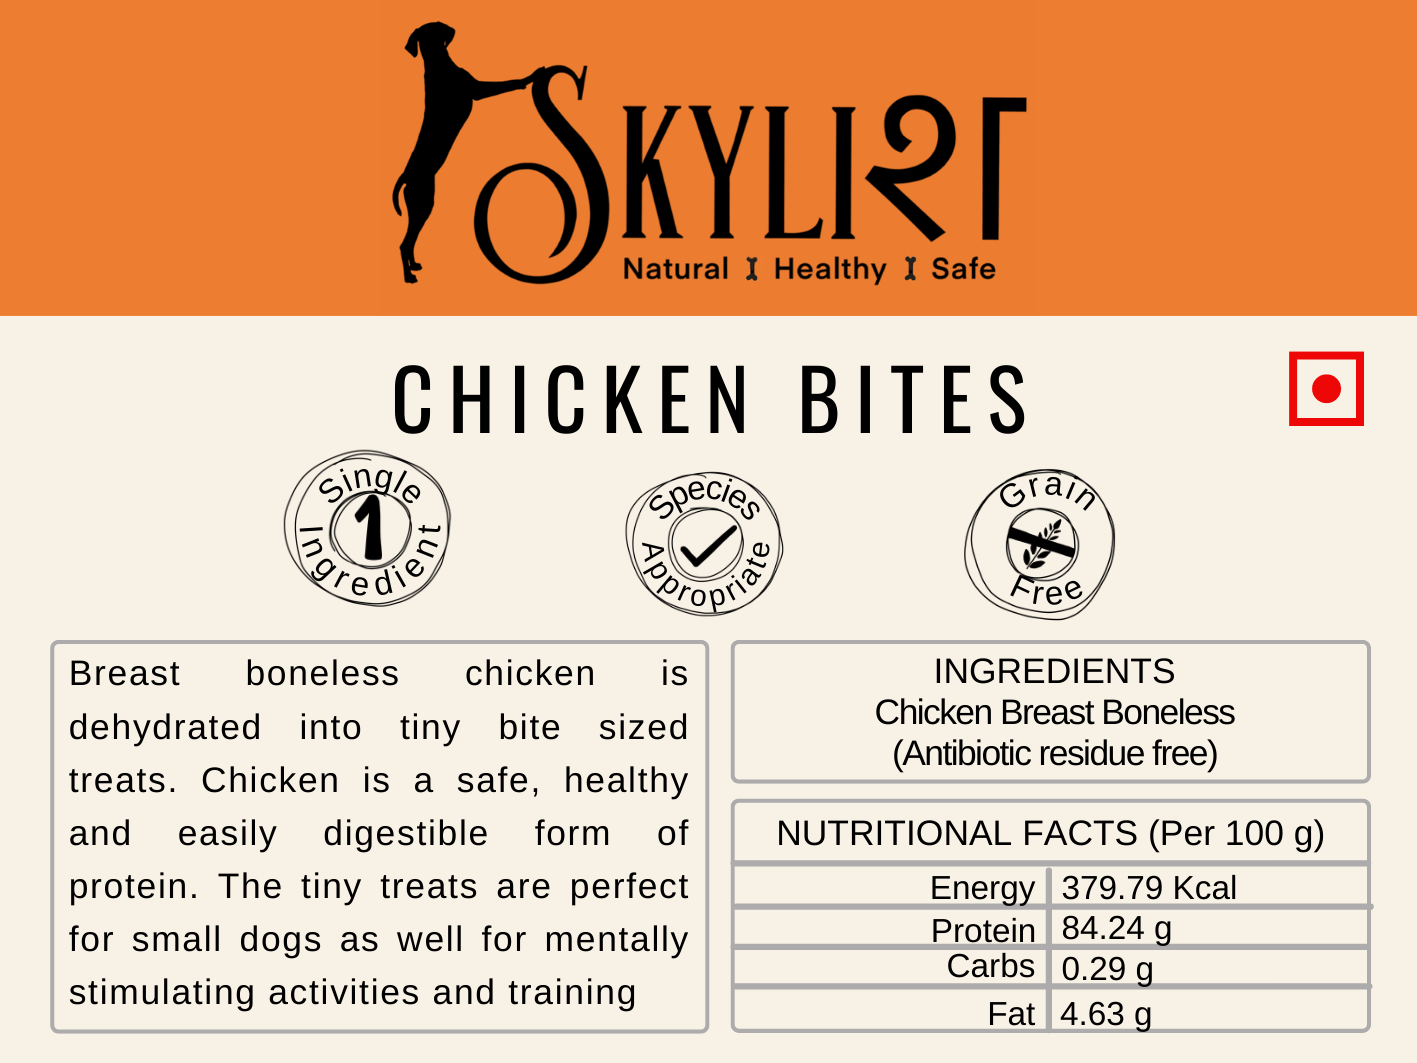 Skylish Chicken Bites